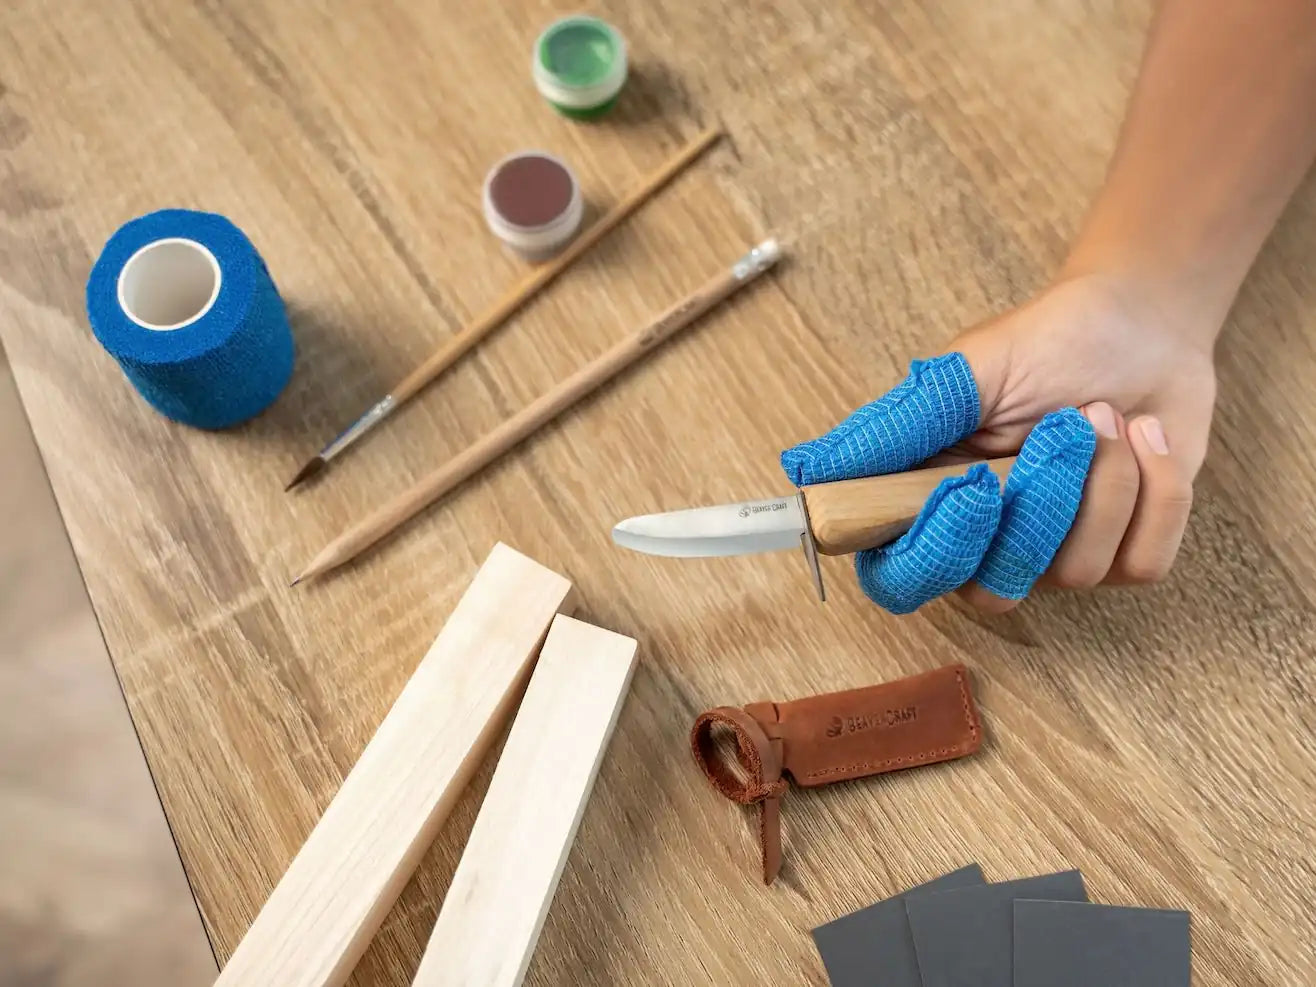  BeaverCraft Wood Carving Kit for Kids & Beginner DIY08 - Wood  Whittling Kit for Kids Woodworking Starter Kit Hobby Kits for Boys Wood  Crafts Projects DIY Gifts, Carving Set Whittling Knife